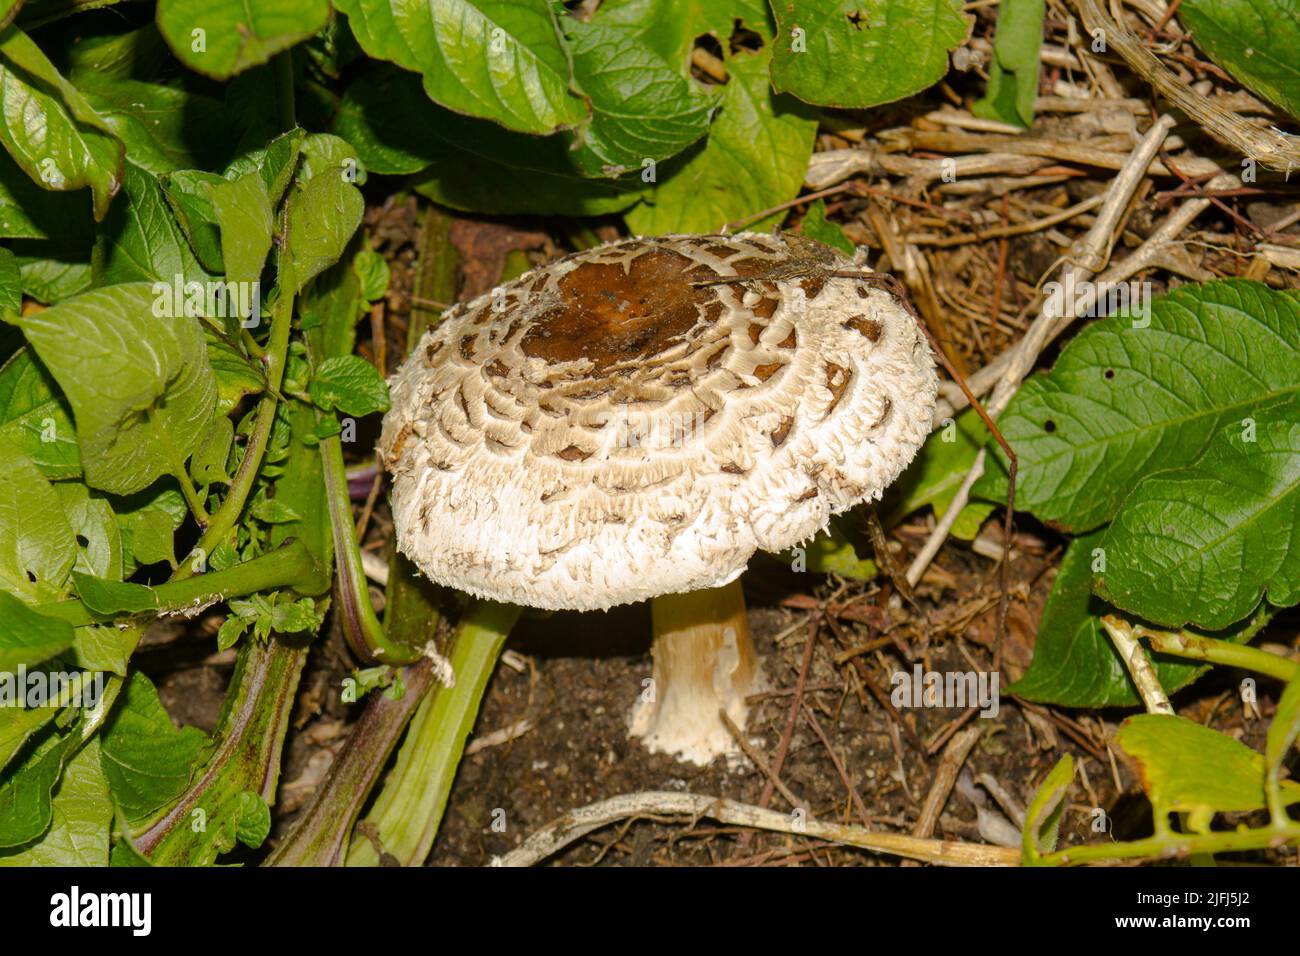 Uno sguardo alla vita in Nuova Zelanda: Foraging per i funghi selvatici: Shaggy Parasol (Chlorophyllum rhacodes): Una scelta commestibile. Foto Stock